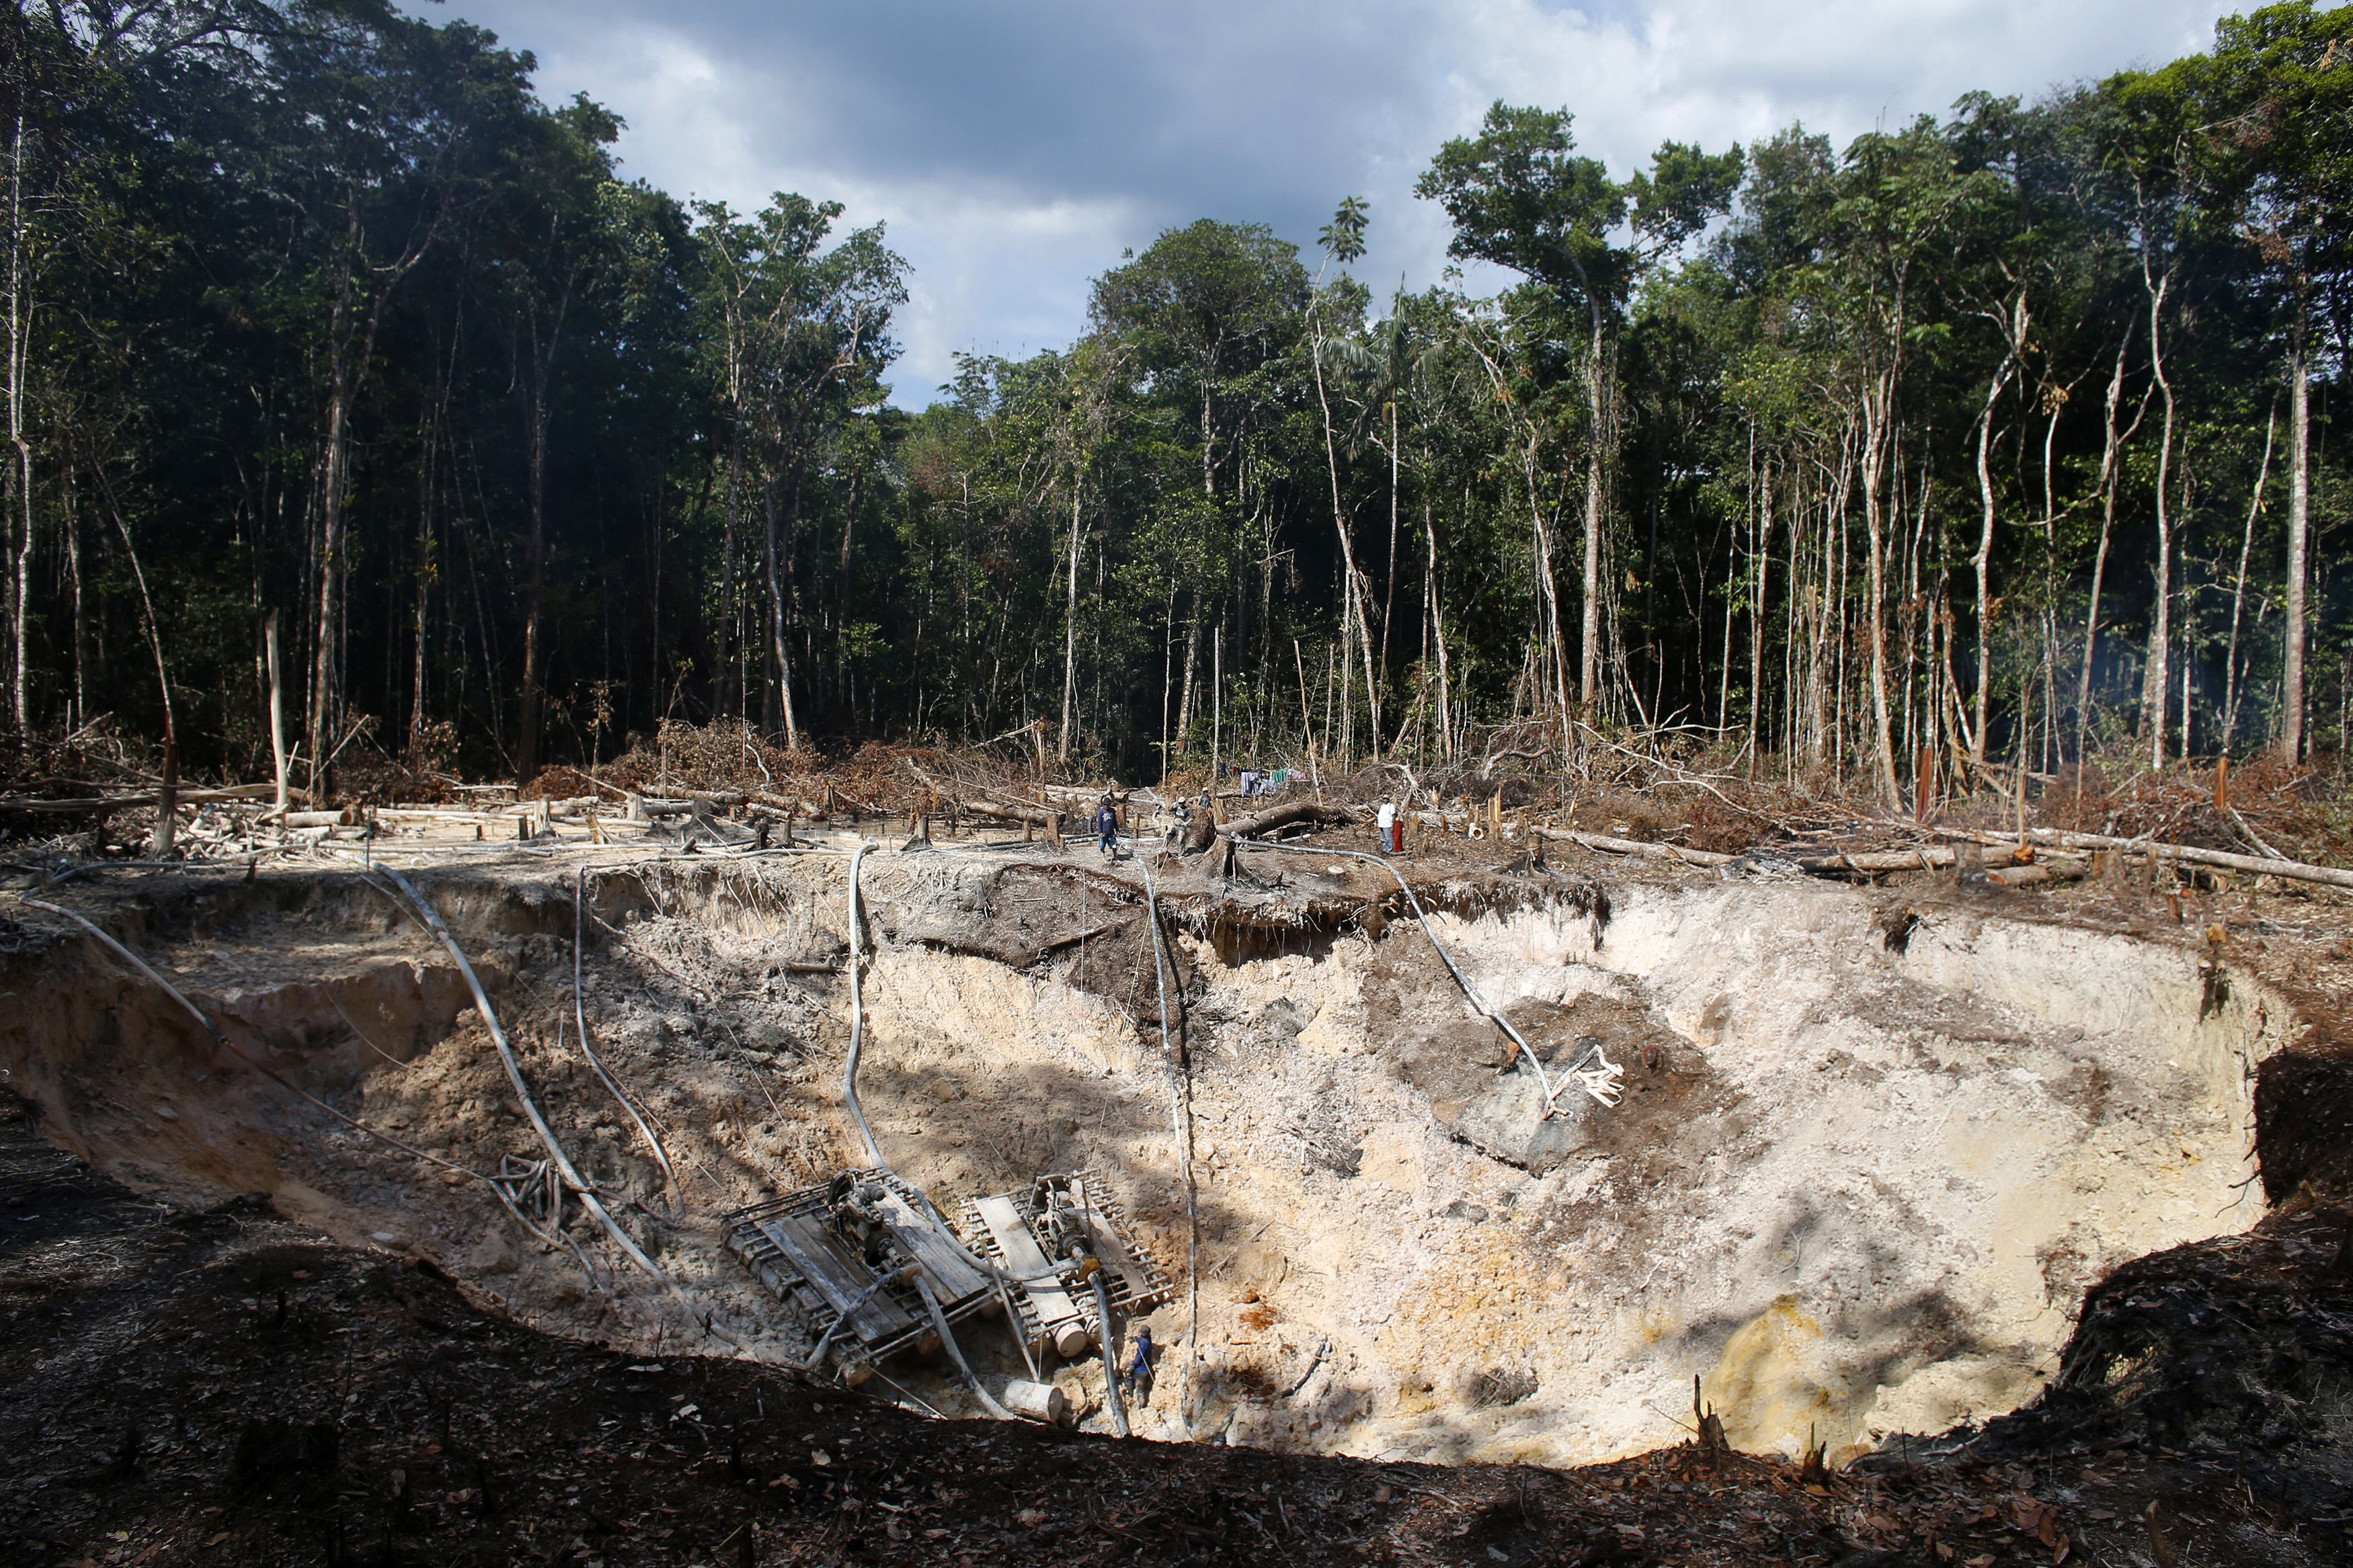 Maduro corre el riesgo de alimentar la pandemia al permitir la minería ilegal en la Amazonia